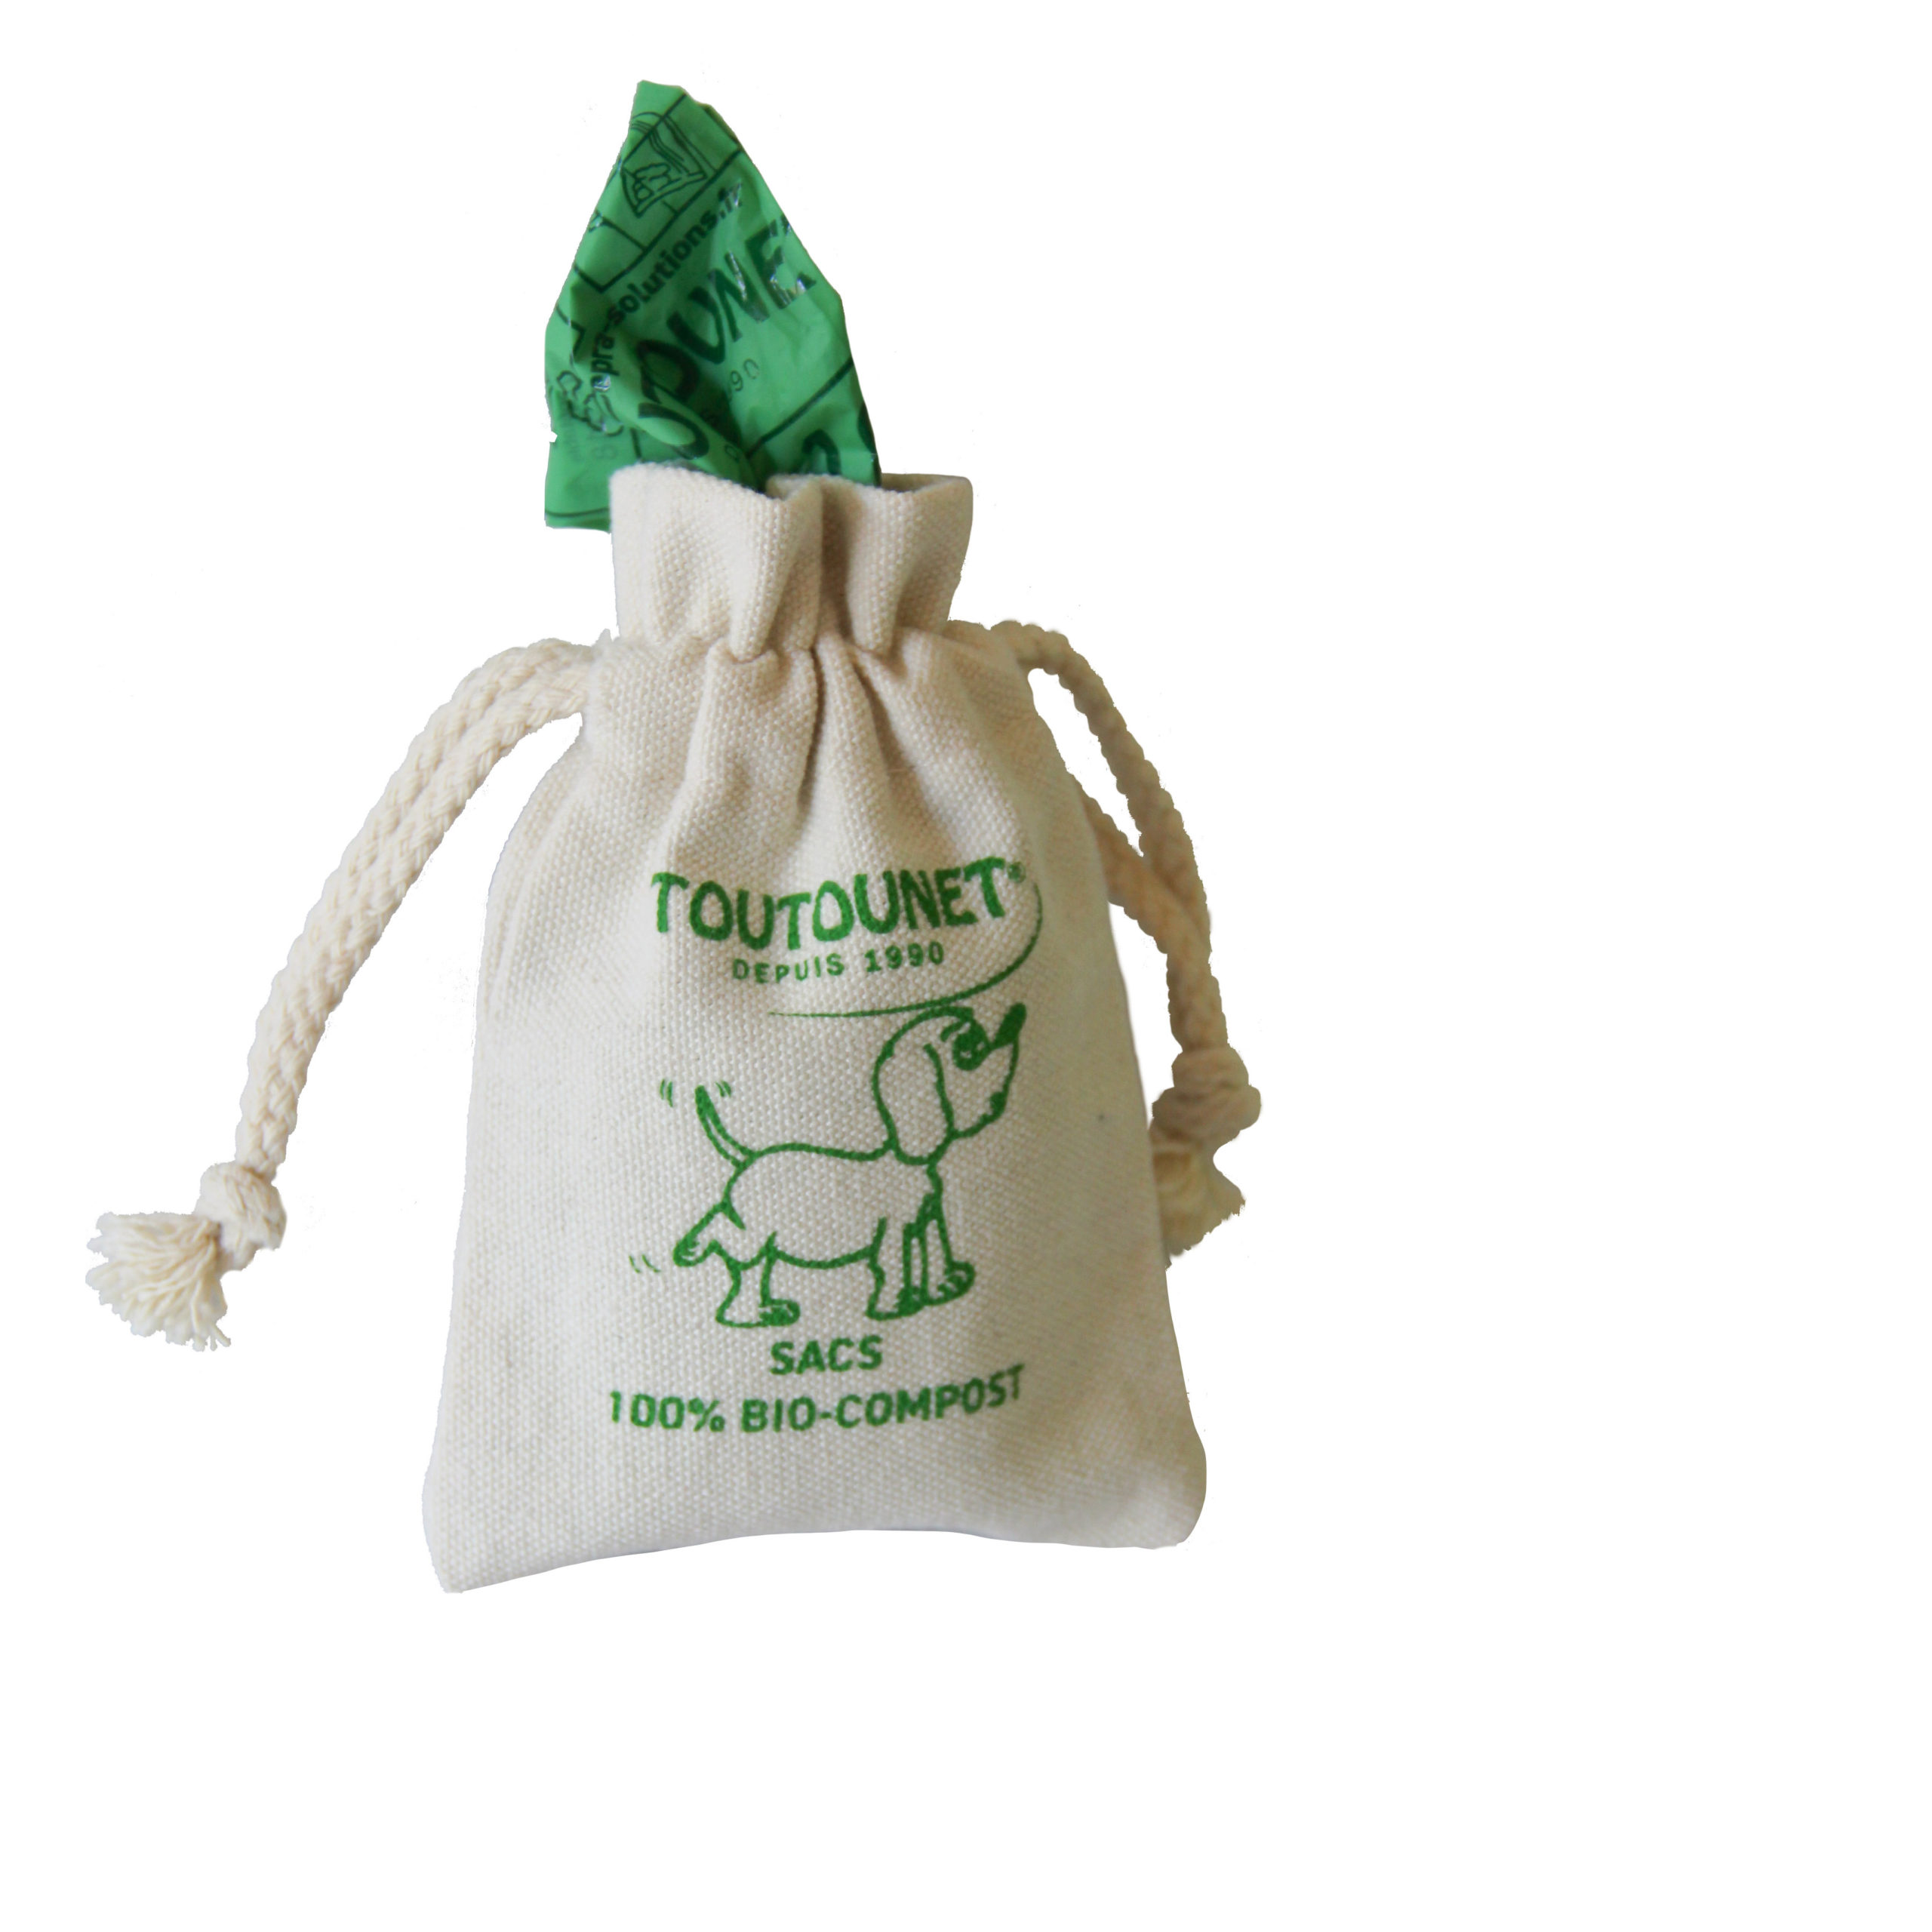 Sacoche en coton bio et sac bio-compostable Toutounet - VentiMax